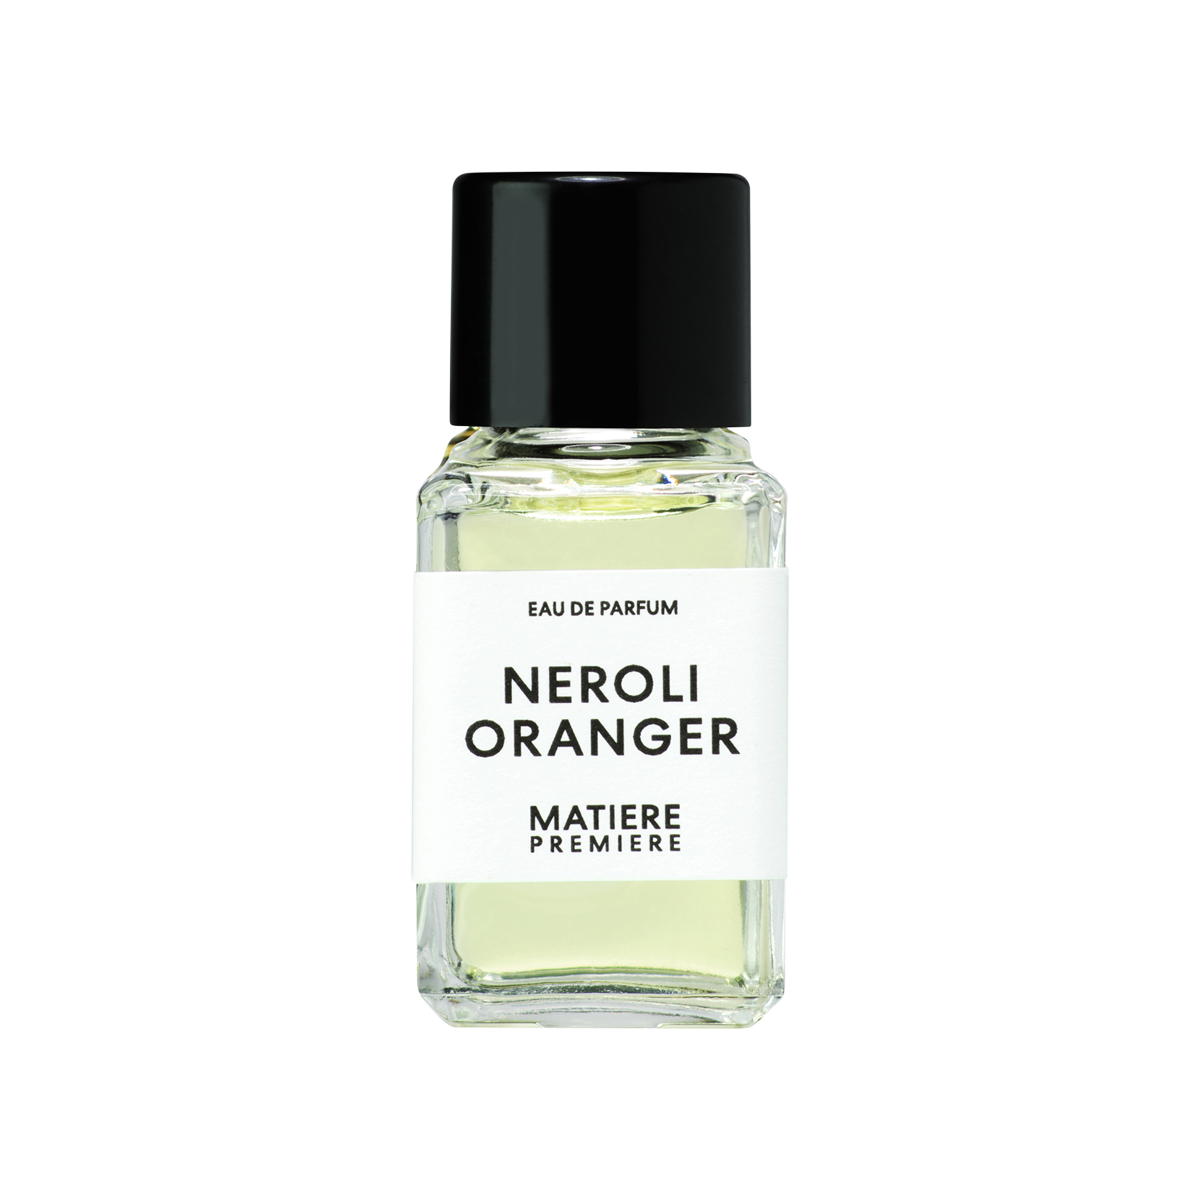 Matiere Premiere - Neroli Oranger Eau de Parfum